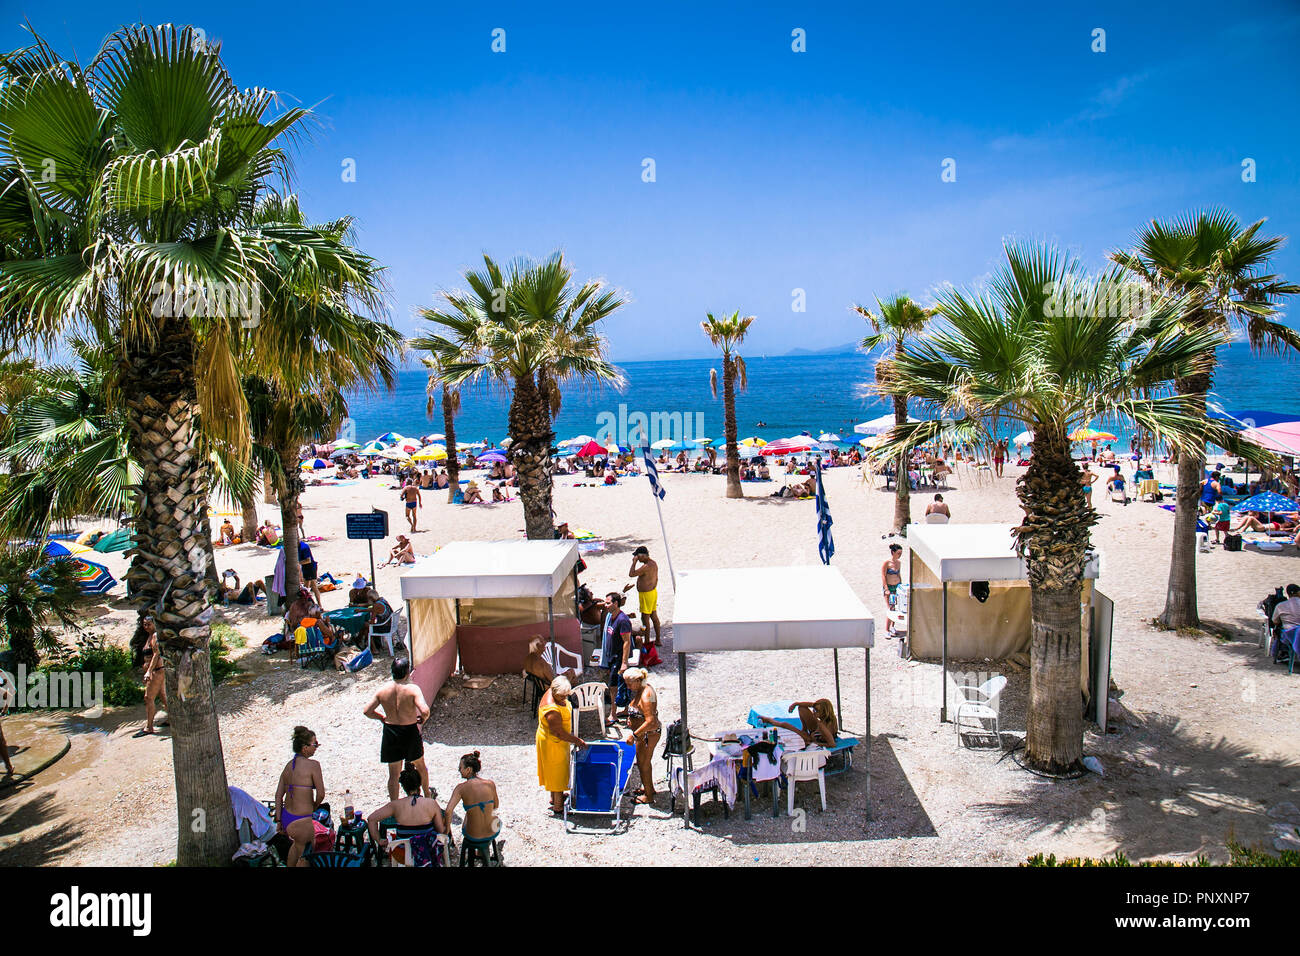 Athen, Griechenland - 19. JUNI 2016: die Leute am Strand in Palaio Faliro in Athen, Griechenland. Stockfoto